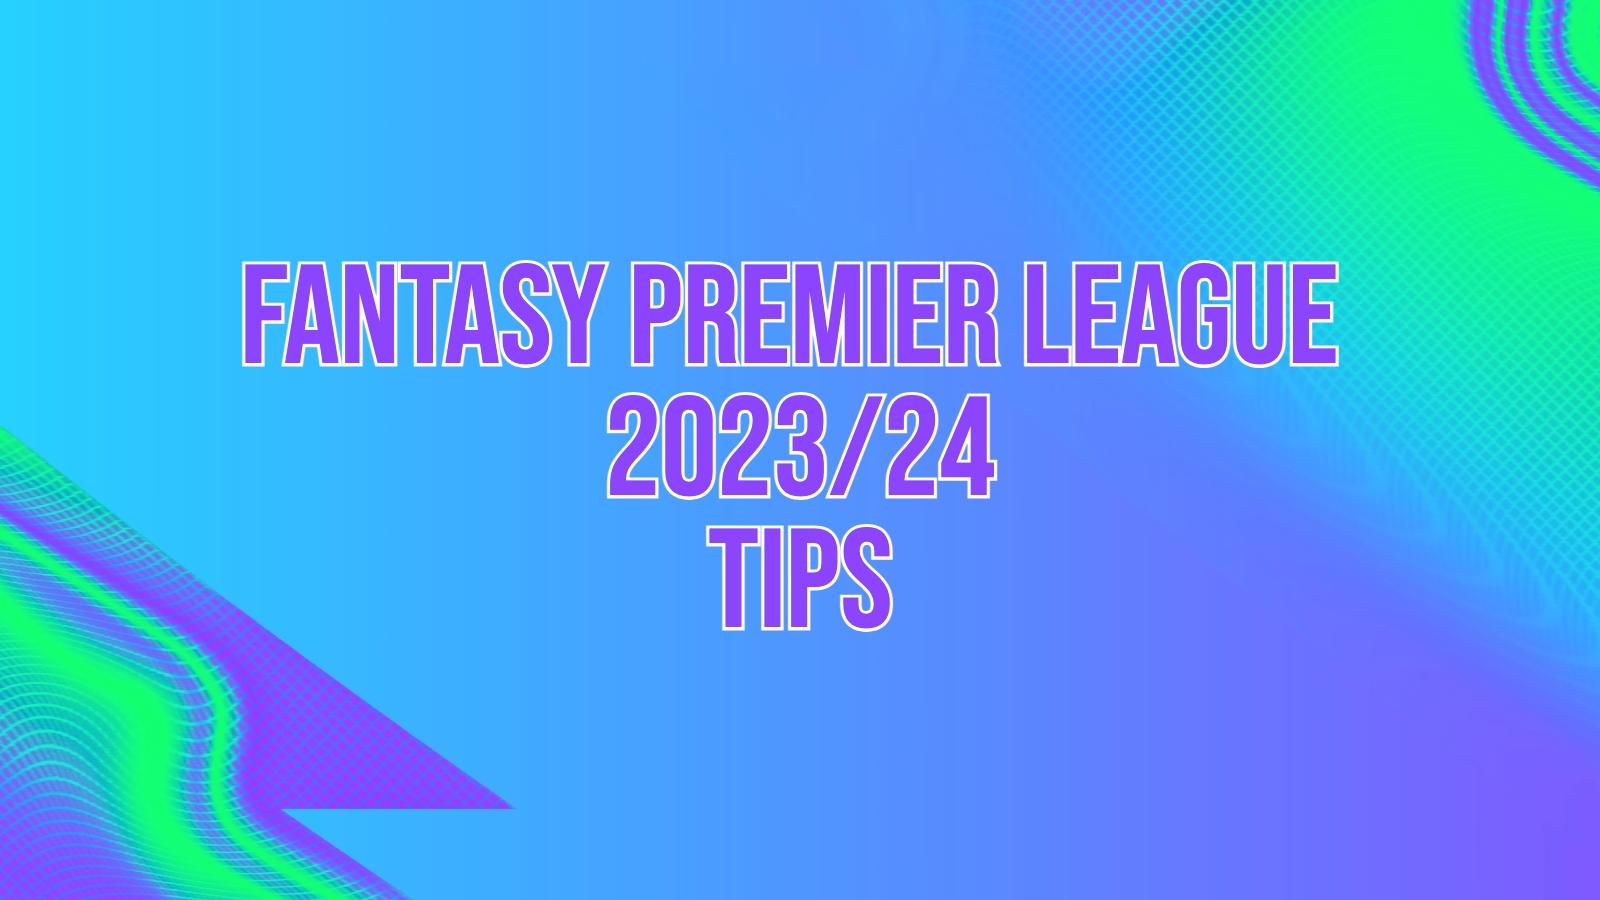 fantasy premier league tips 2023/24